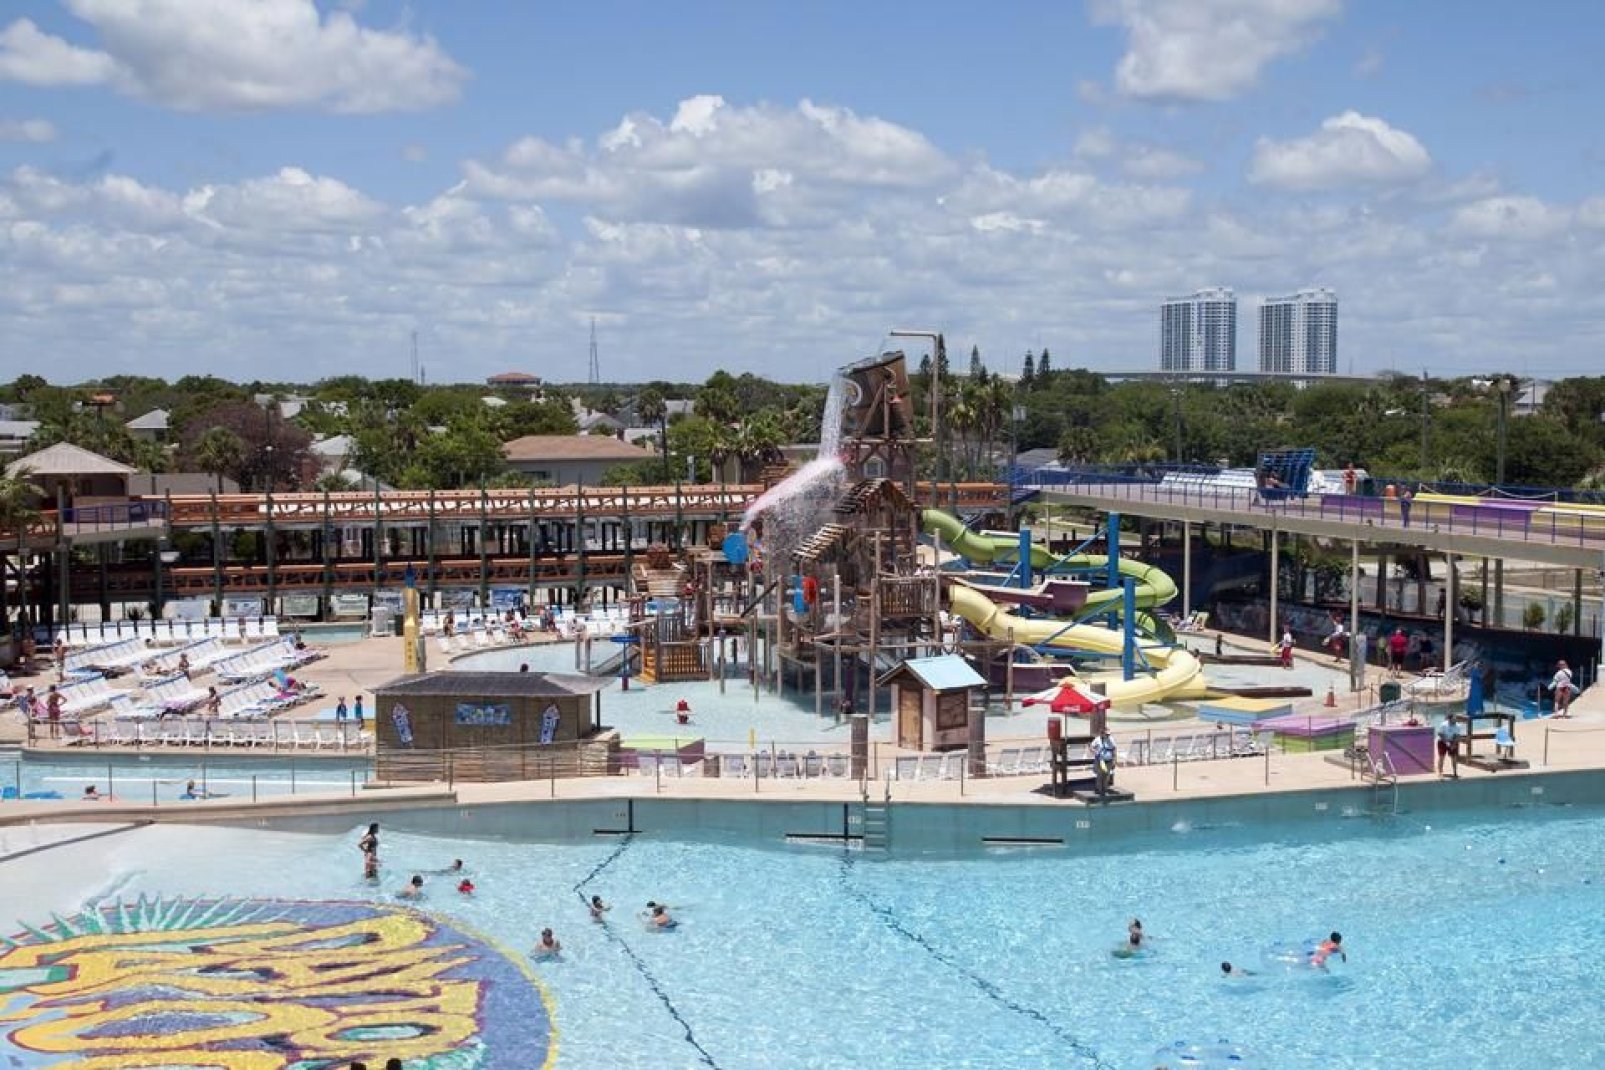 Il parco acquatico a Daytona Beach propone numerosi giochi acquatici, piscine a onde, area giochi d'acqua e scivoli. 